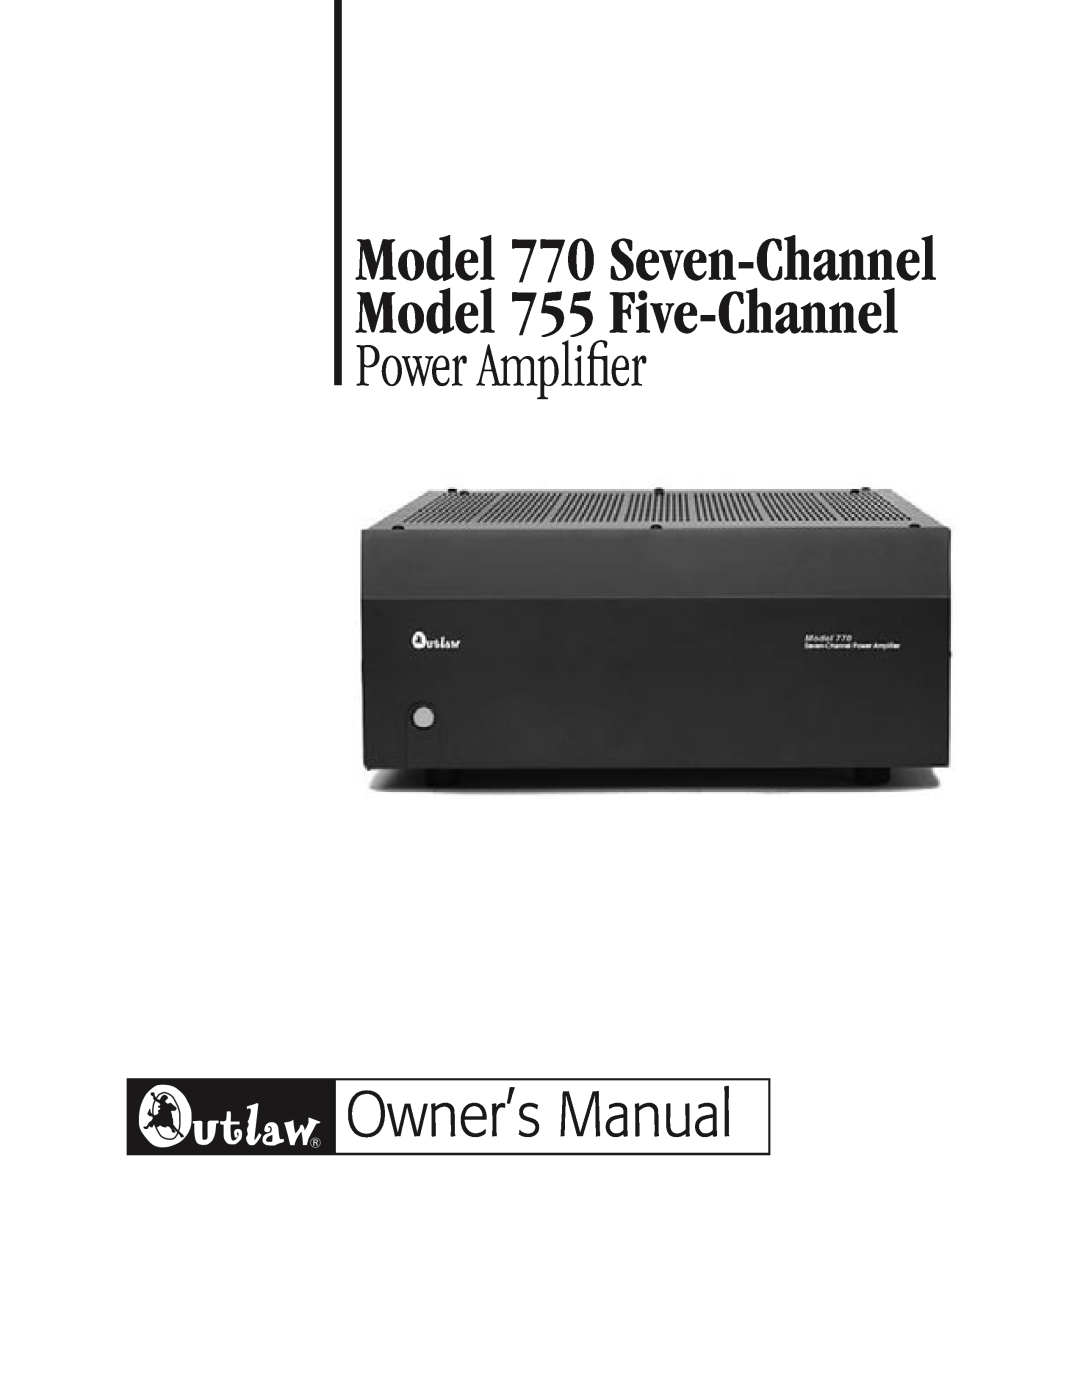 Outlaw Audio owner manual Model 770 Seven-Channel Model 755 Five-Channel, Power Amplifier 